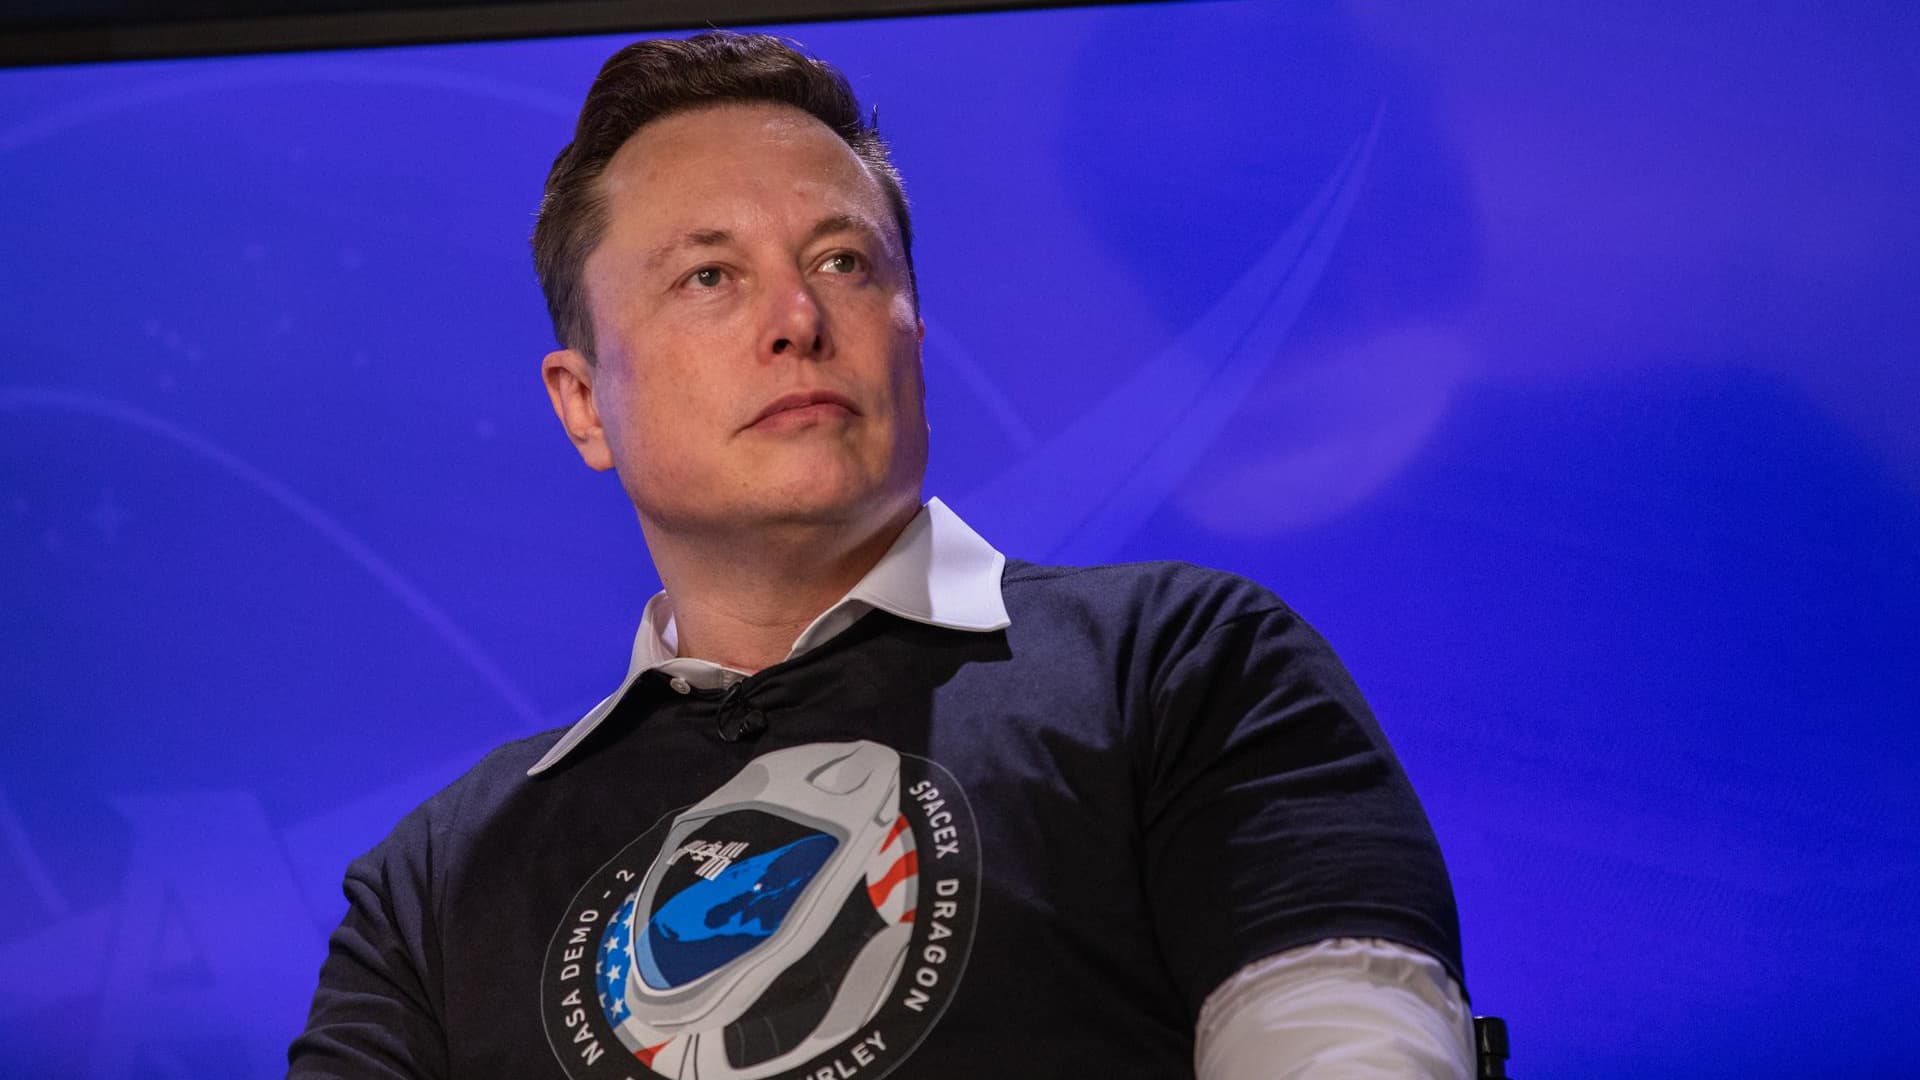 SpaceX pagó para resolver el reclamo de conducta sexual inapropiada de Elon Musk, según un informe